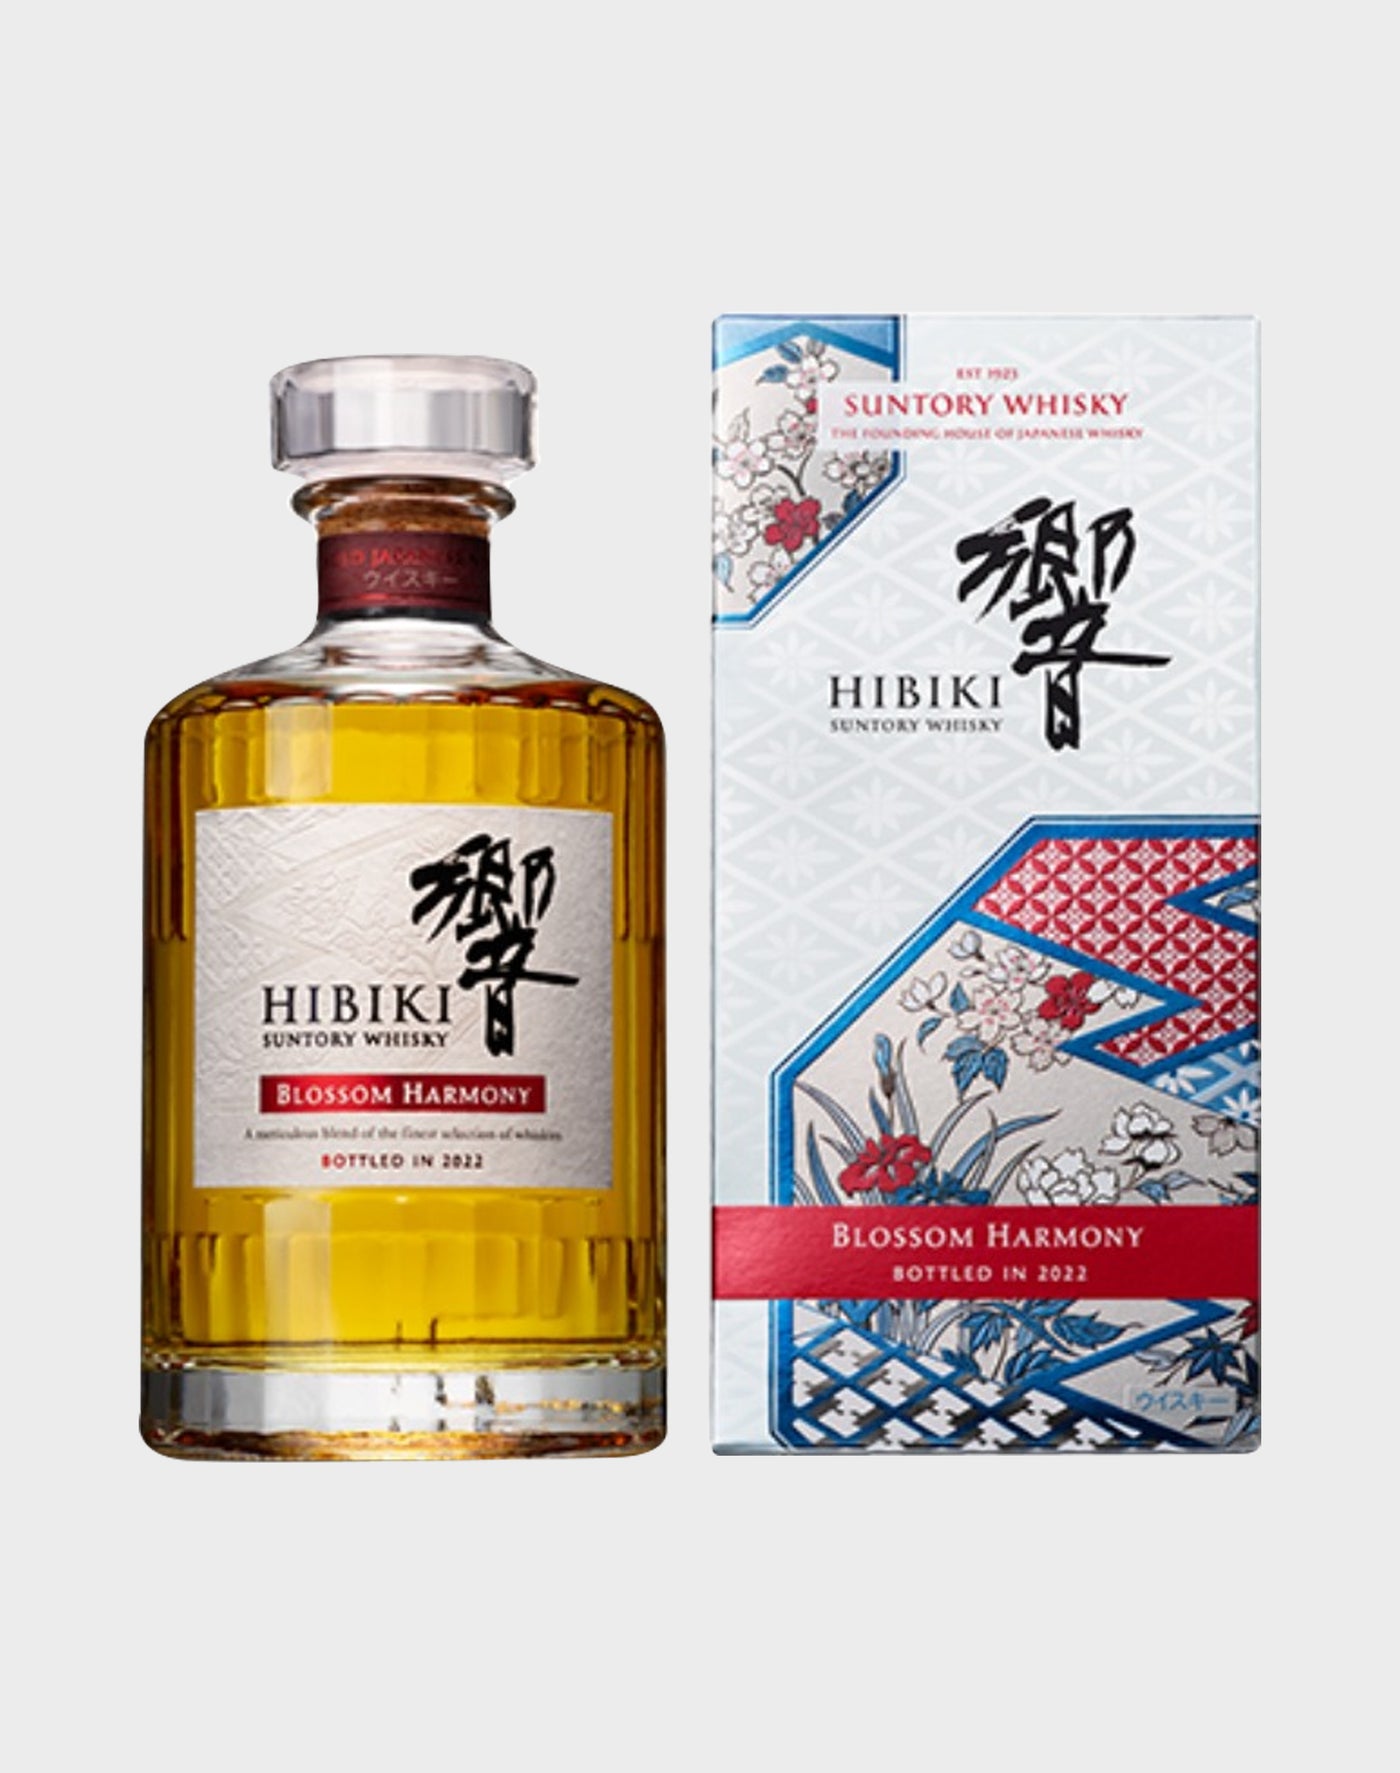 BUY] Suntory Hibiki Blossom Harmony | Limited Edition 2022 at